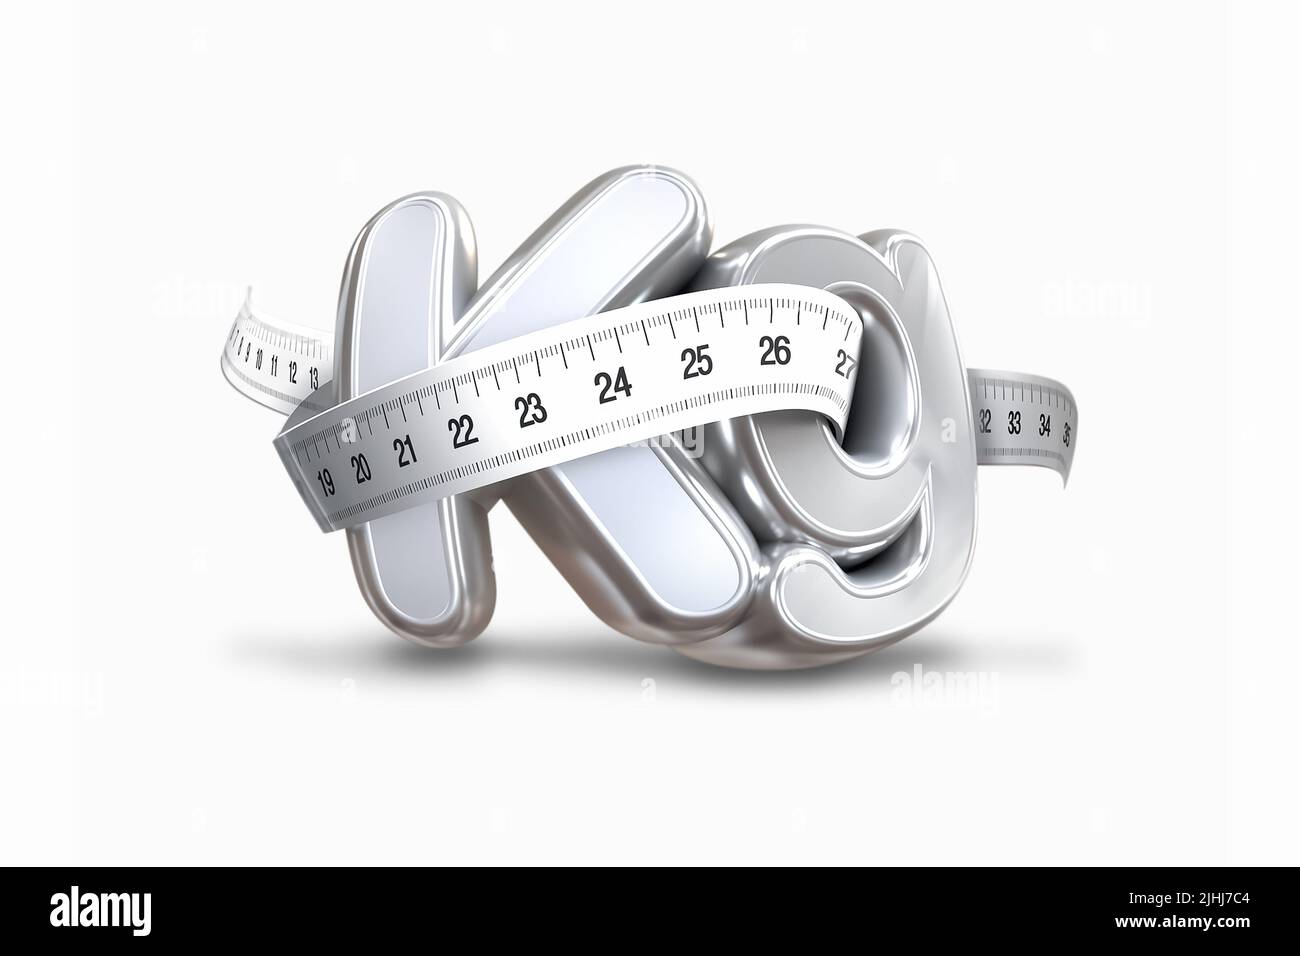 Gesundes und schlankes Gewichtsmanagement. 3D Abbildung des KG-Symbols und der Skala, die Fettgewicht und Fettleibigkeit und Ernährung symbolisieren. Stockfoto